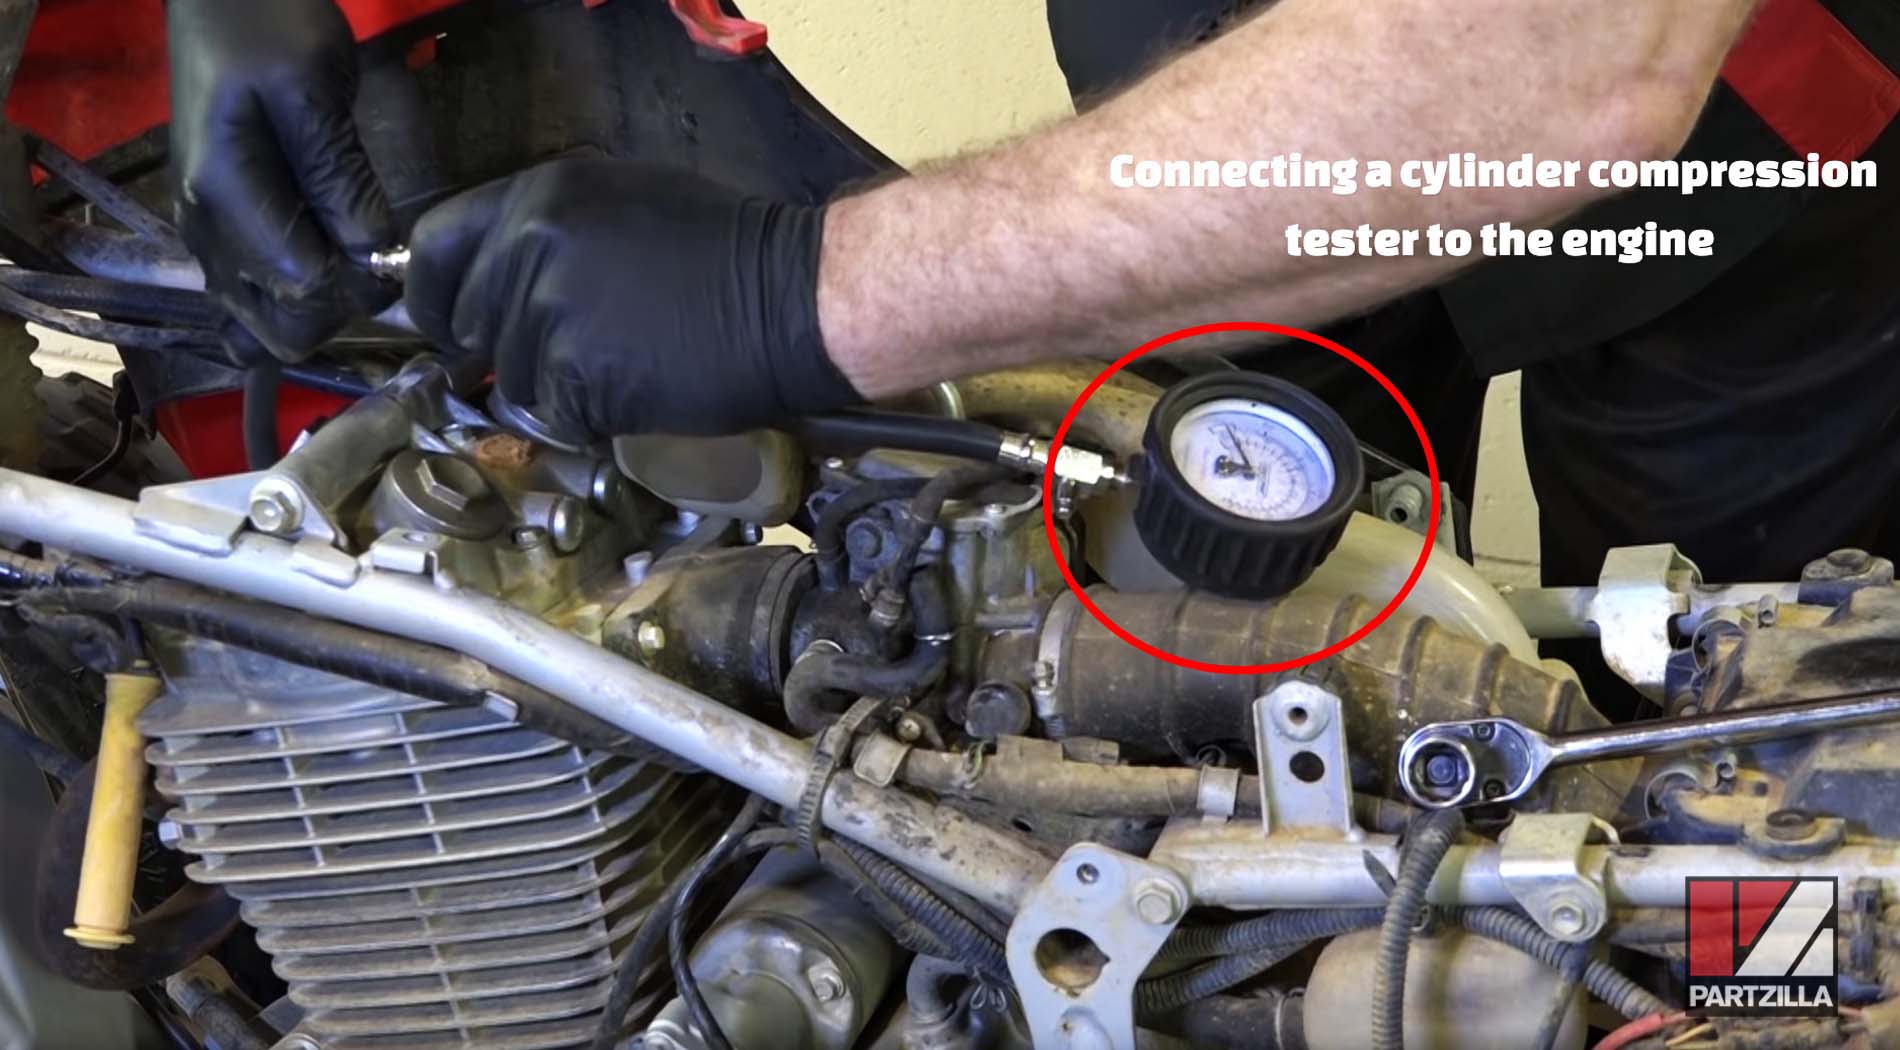 Honda TRX 400 cylinder compression test